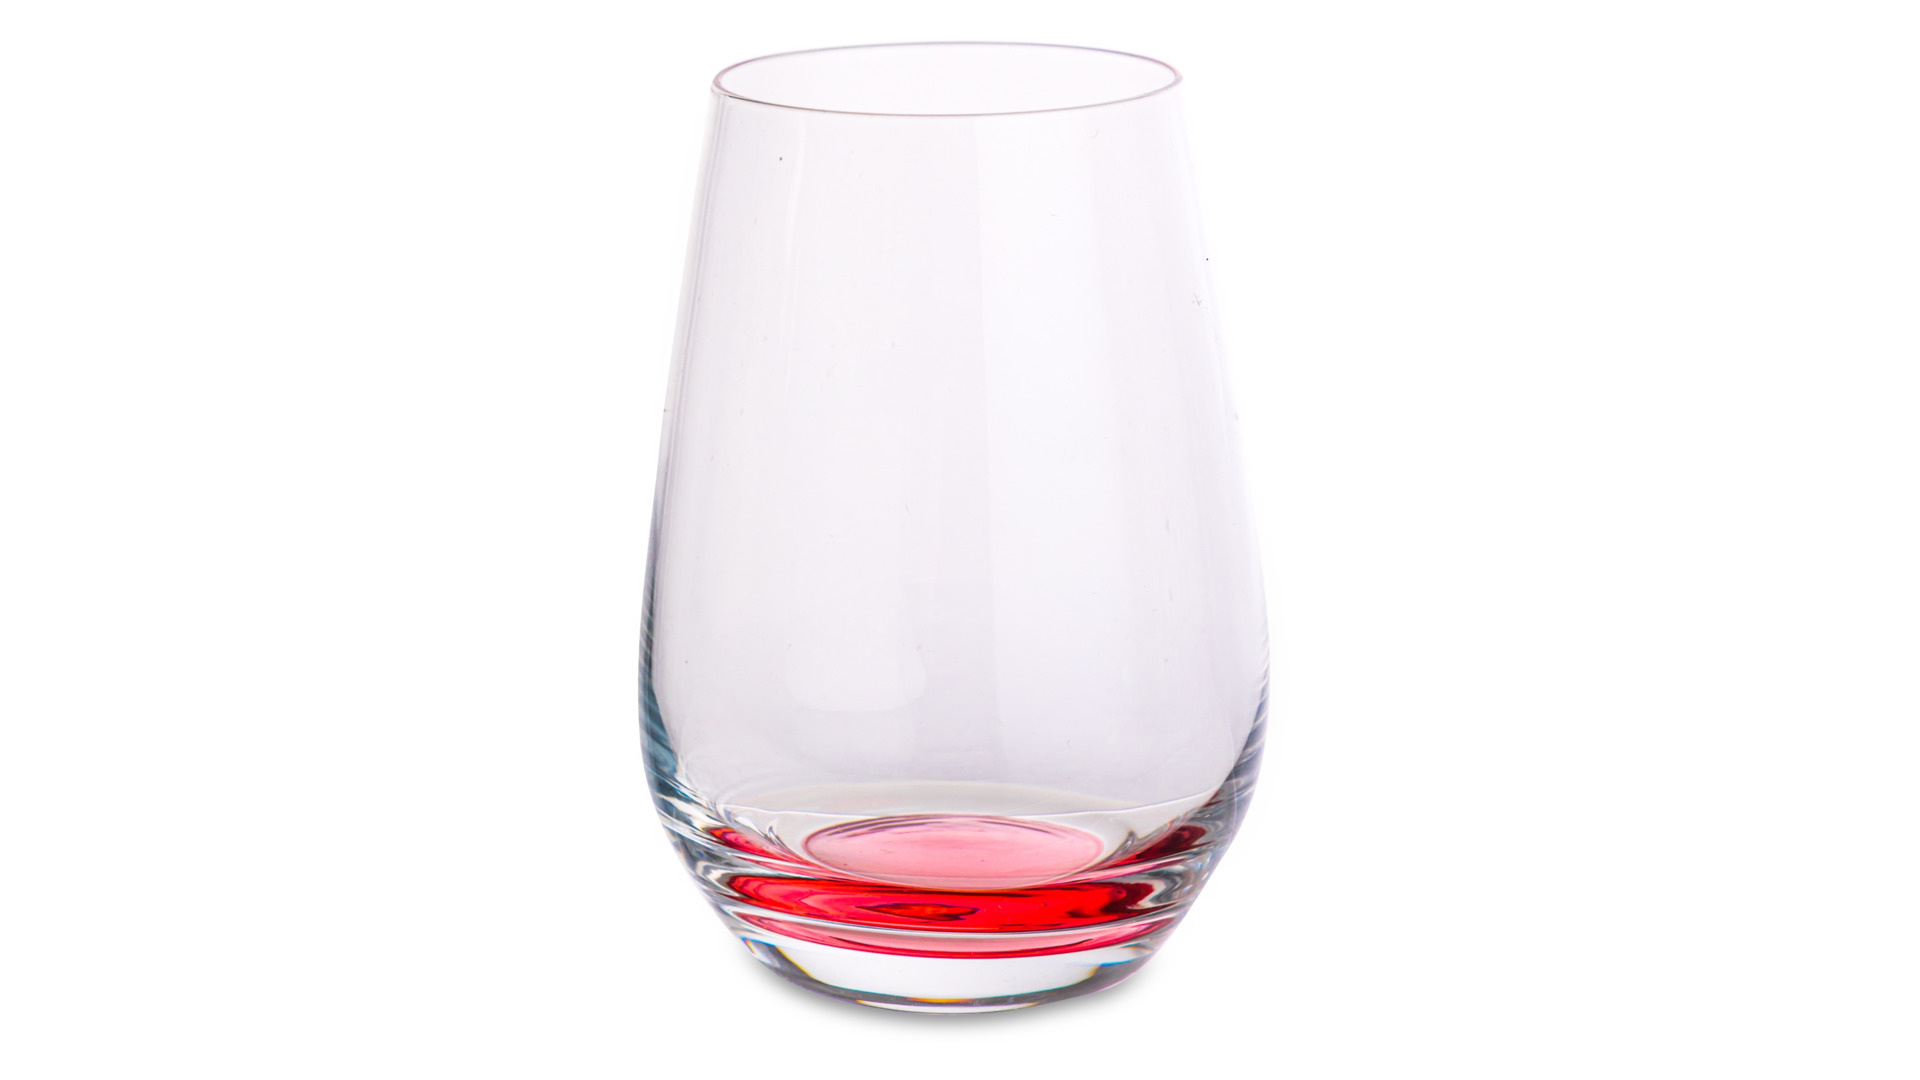 Набор стаканов для воды Zwiesel Glas Прикосновение цвета 397 мл, 3 шт, 3 цвета